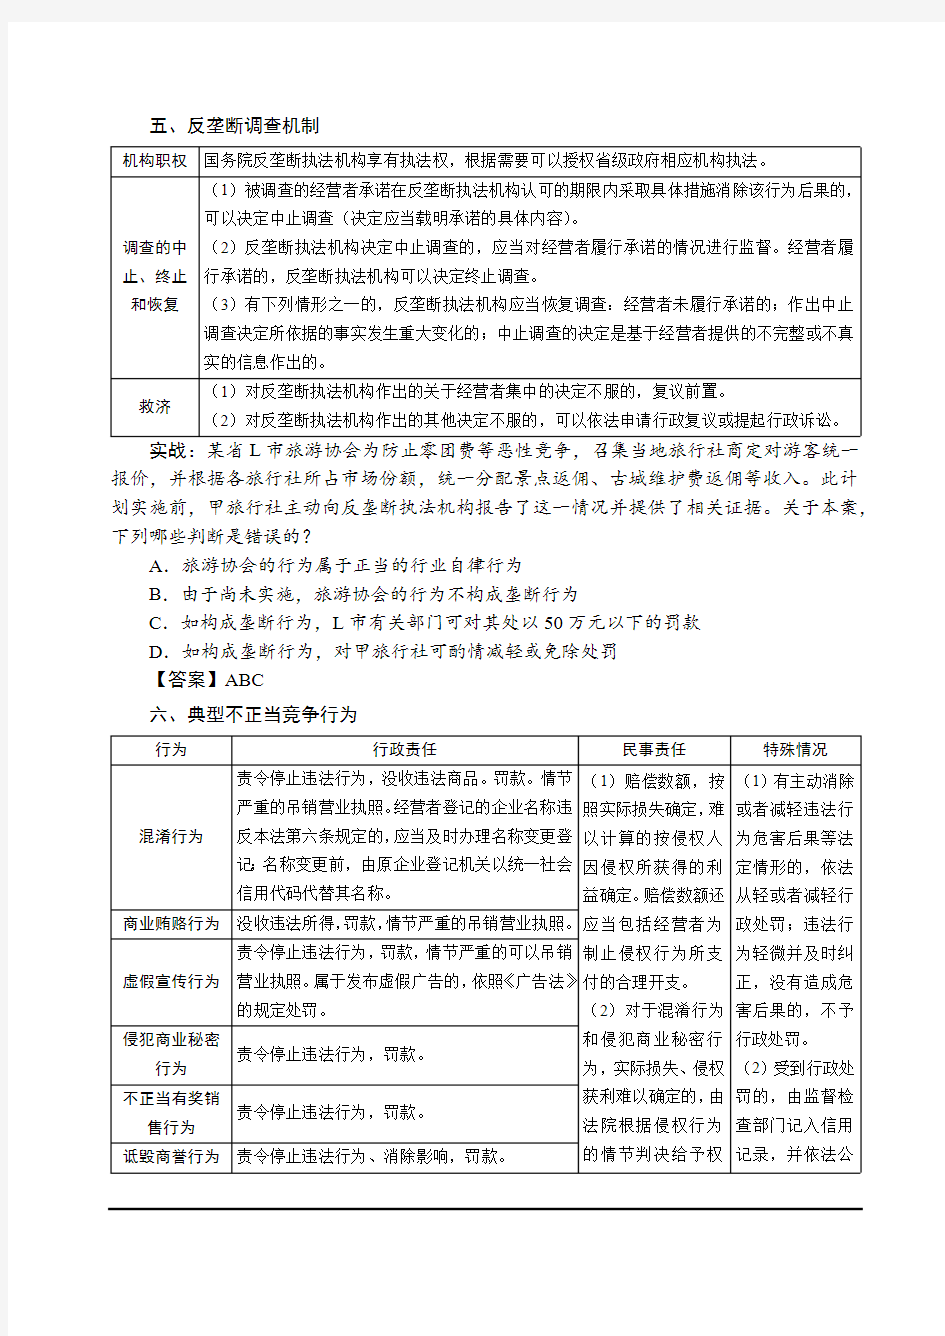 2019年强化讲义-第22节商经法 经济法-竞争法(2)-汪华亮